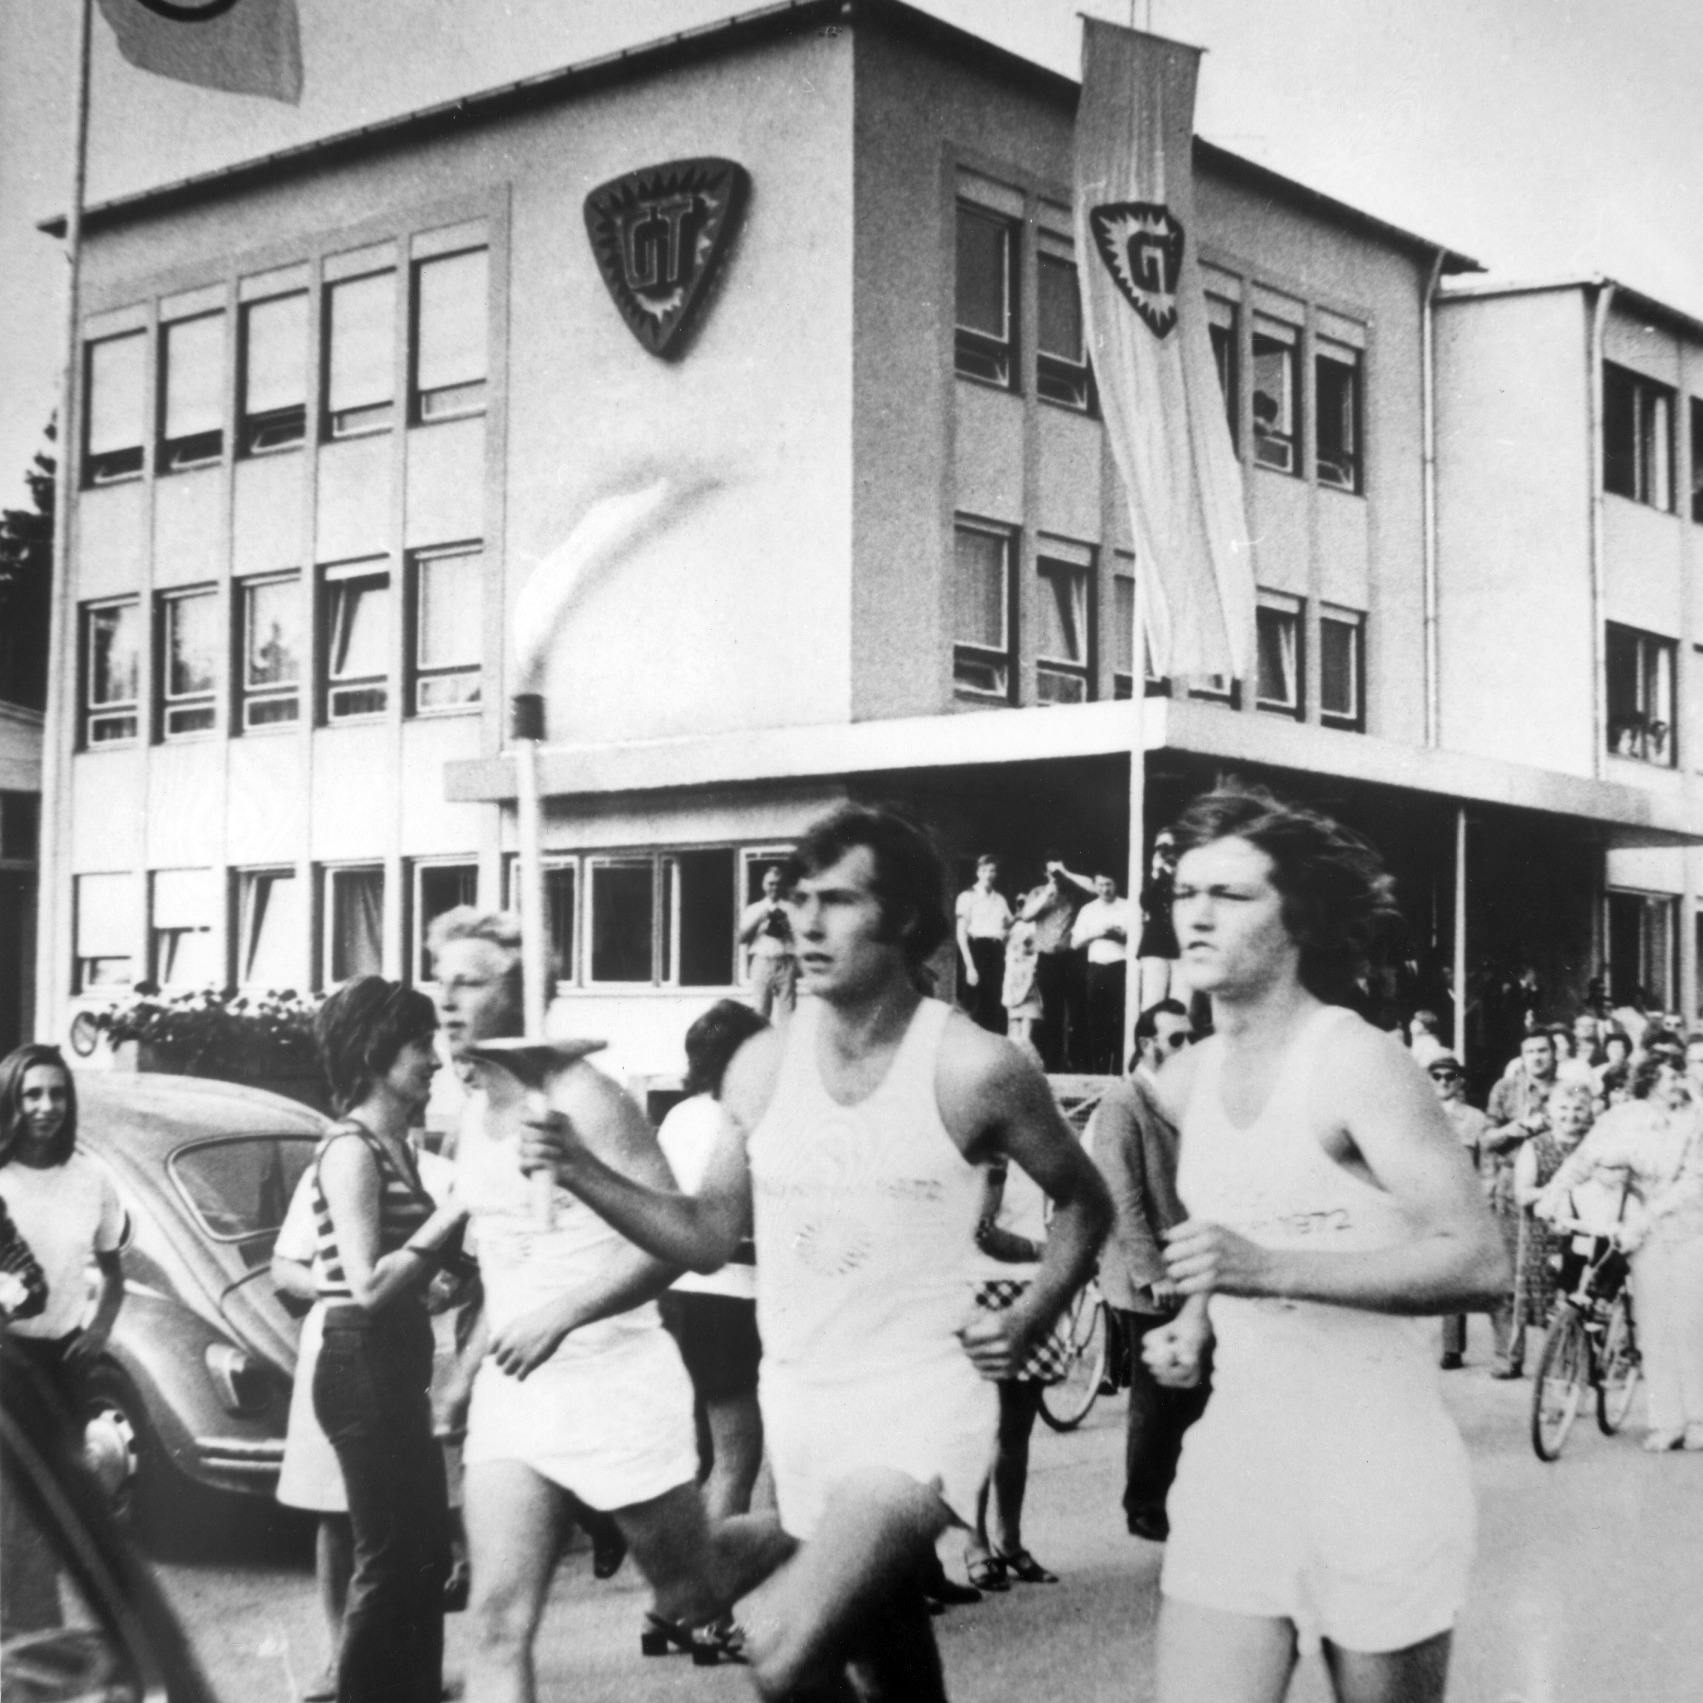 Fackellauf Olympia 1972 vor Tyczka Gebäude